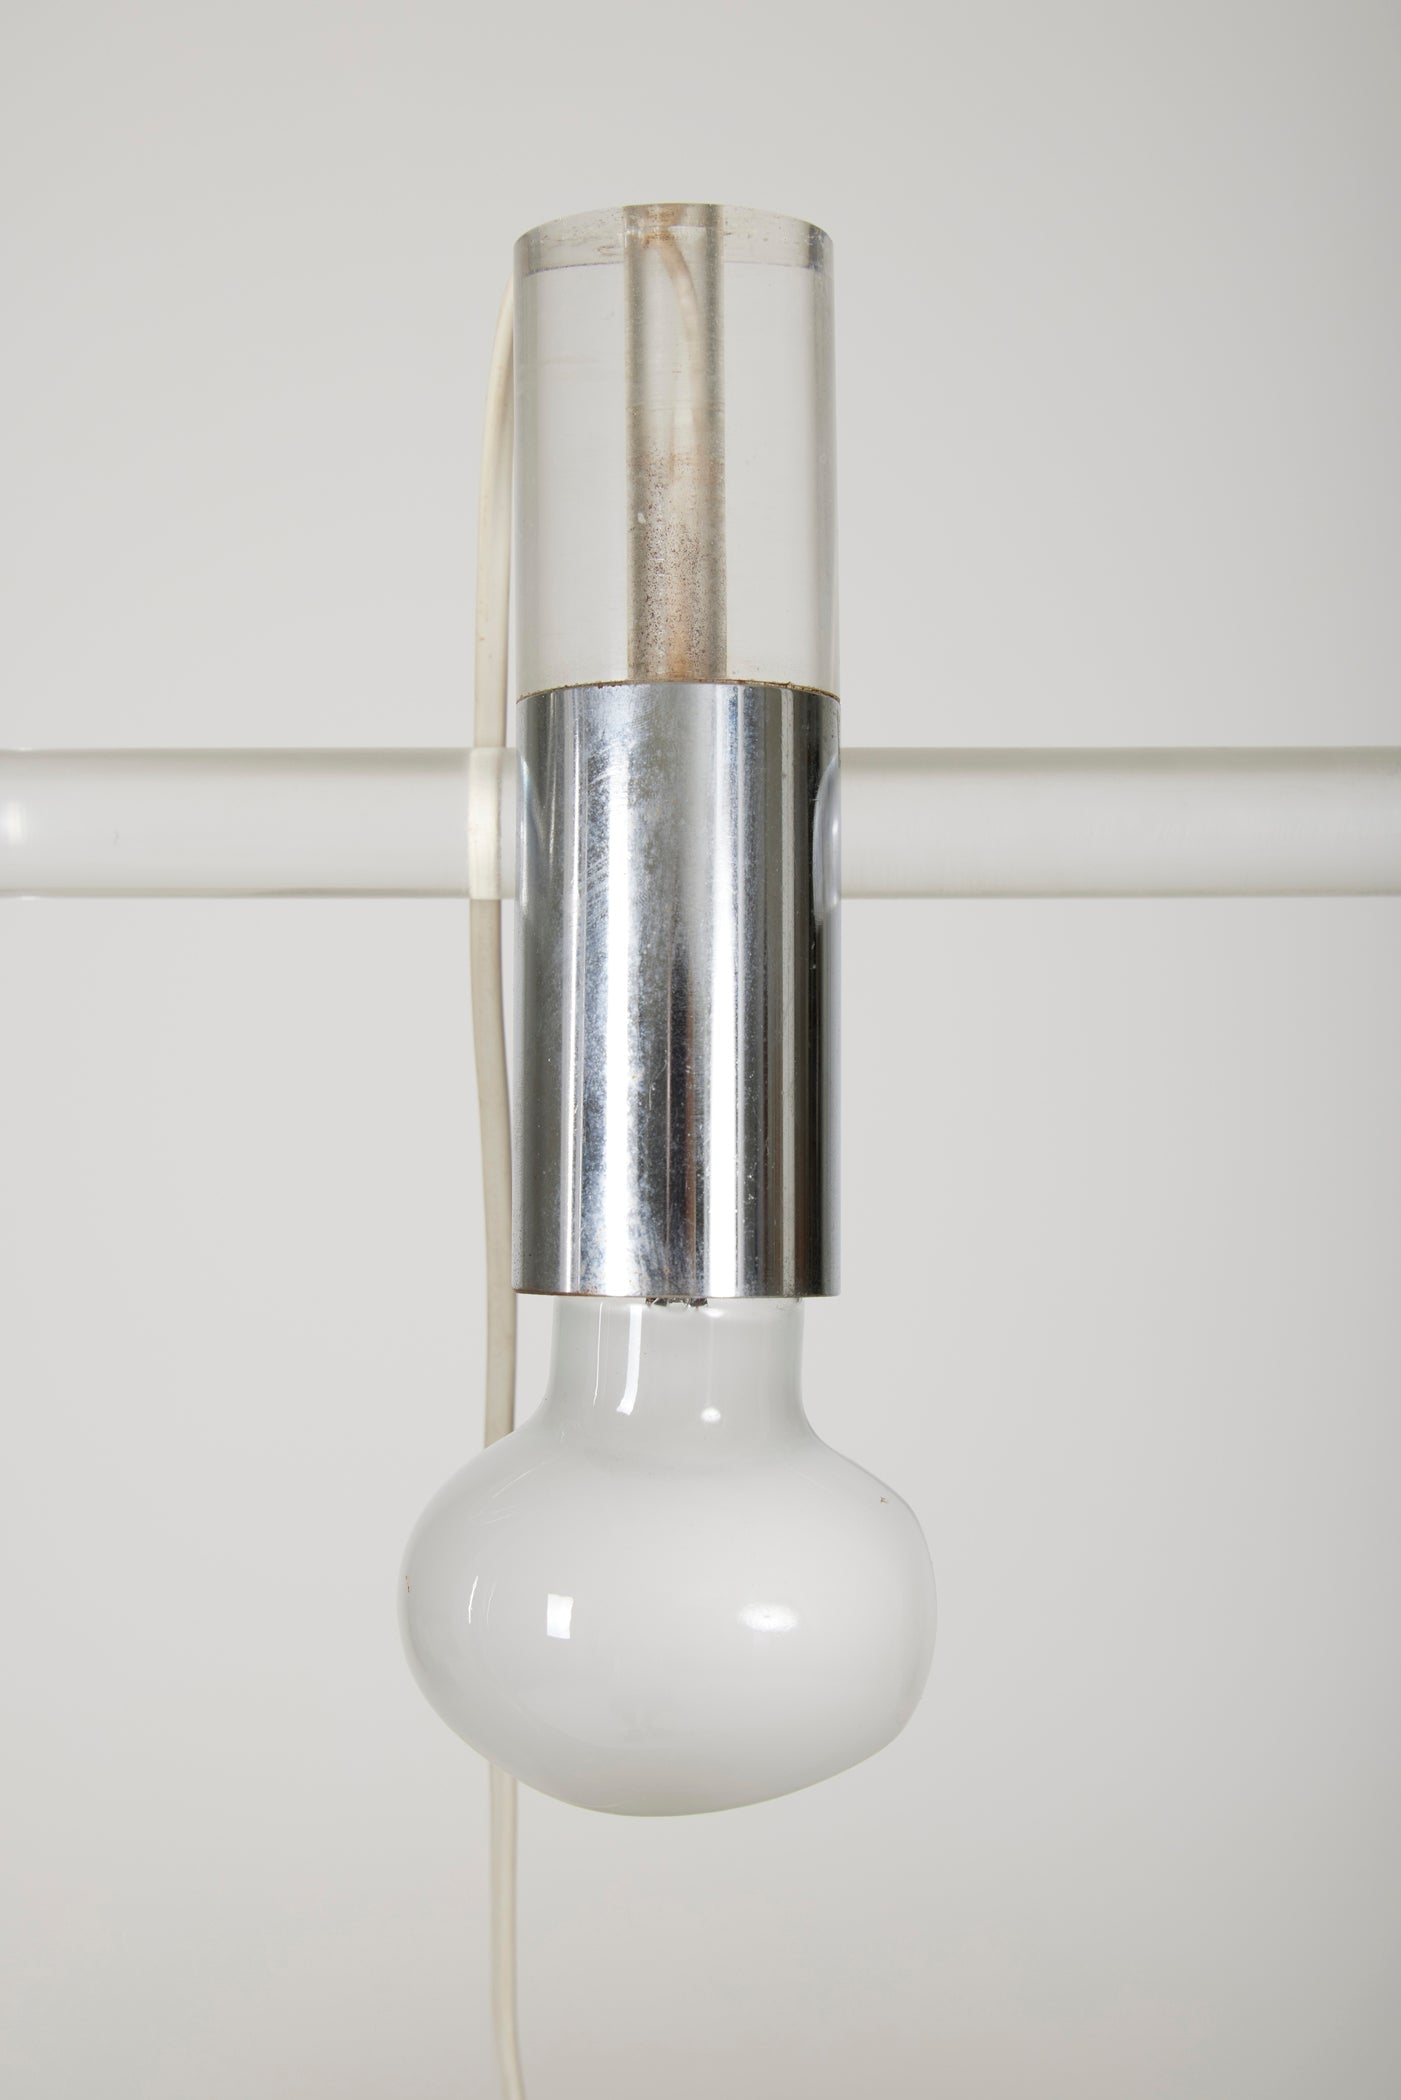 Lampe de table Crylicord du designer Peter Hamburger édition Knoll, années 1970. Structure en altuglas coudée à base rectangulaire et métal chromé. Très bel état avec quelques traces d'usage.